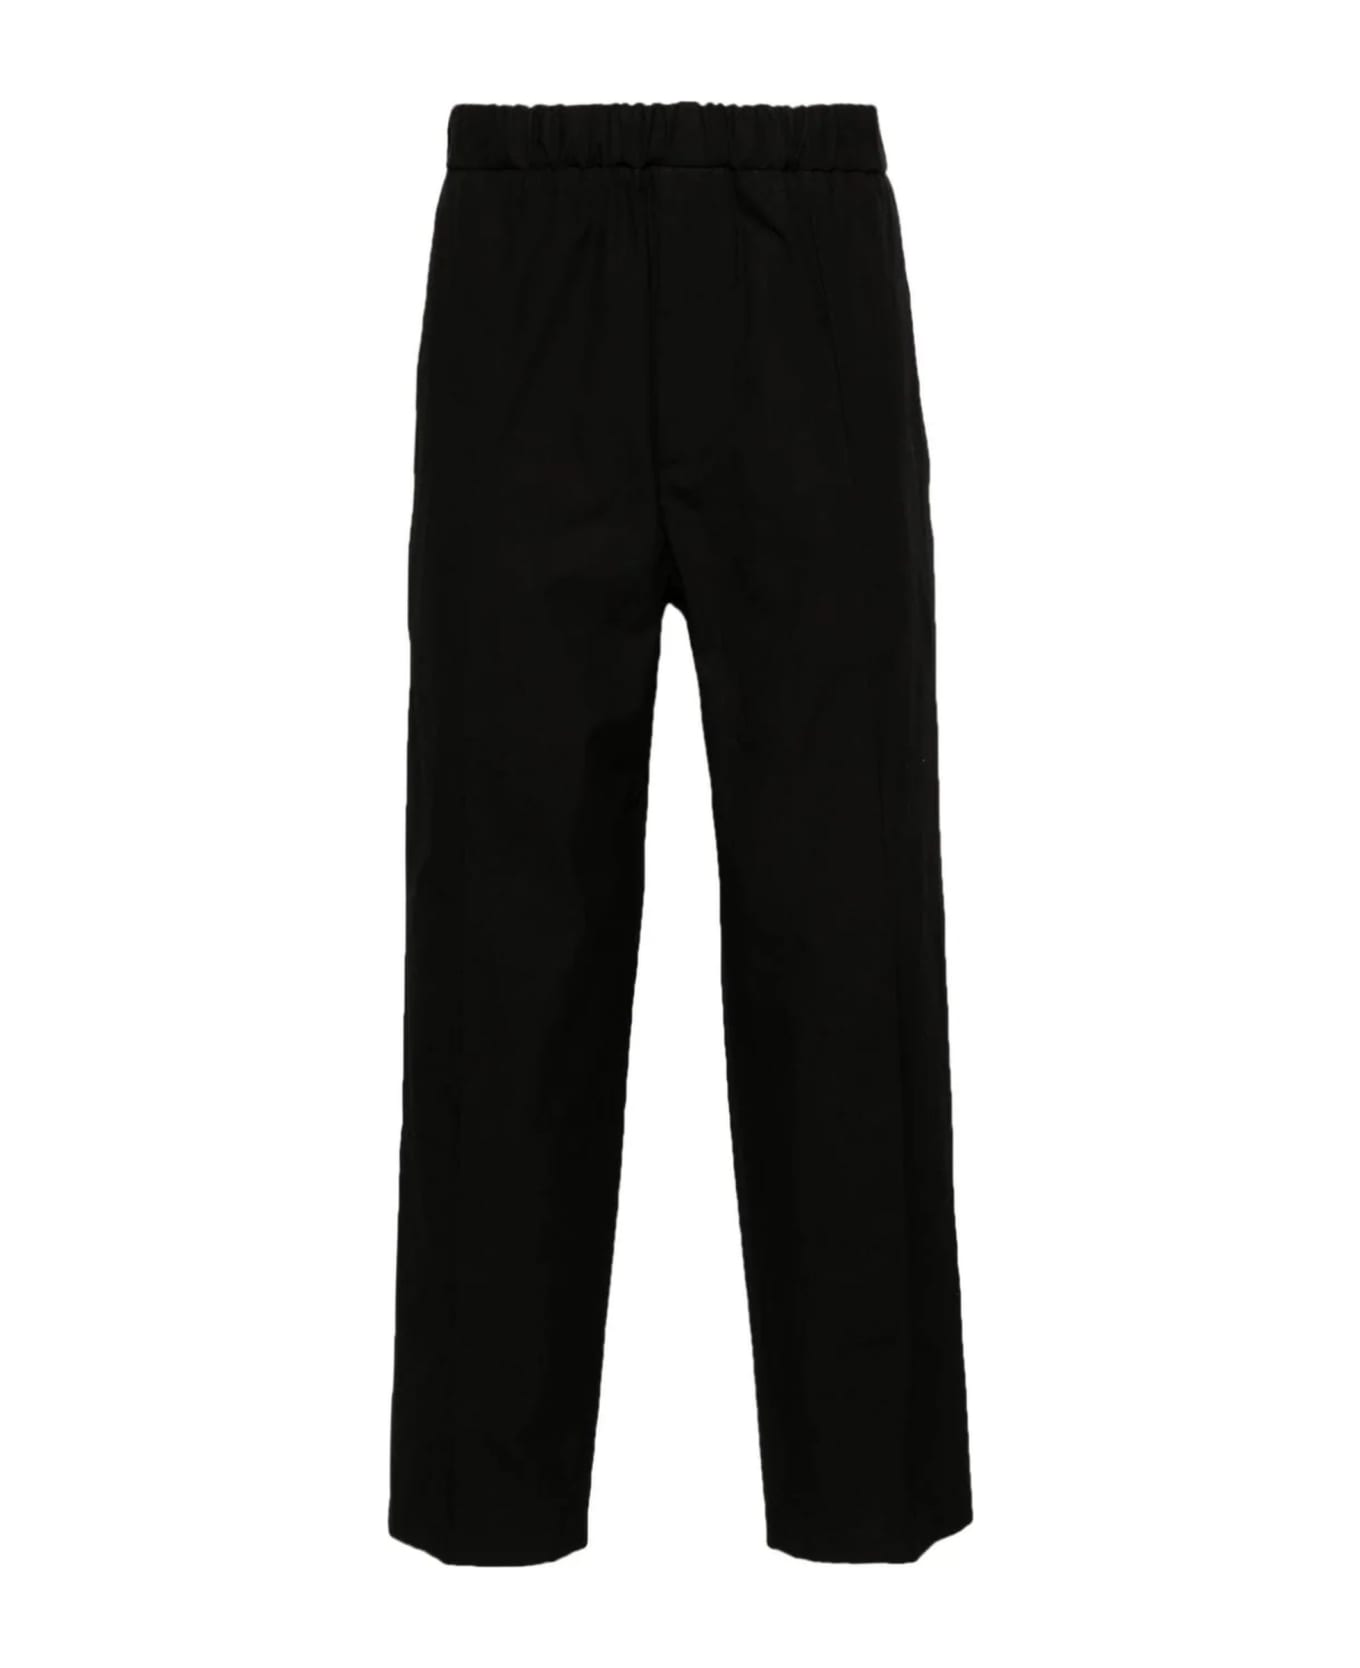 Jil Sander Black Cotton Trousers - Black ボトムス